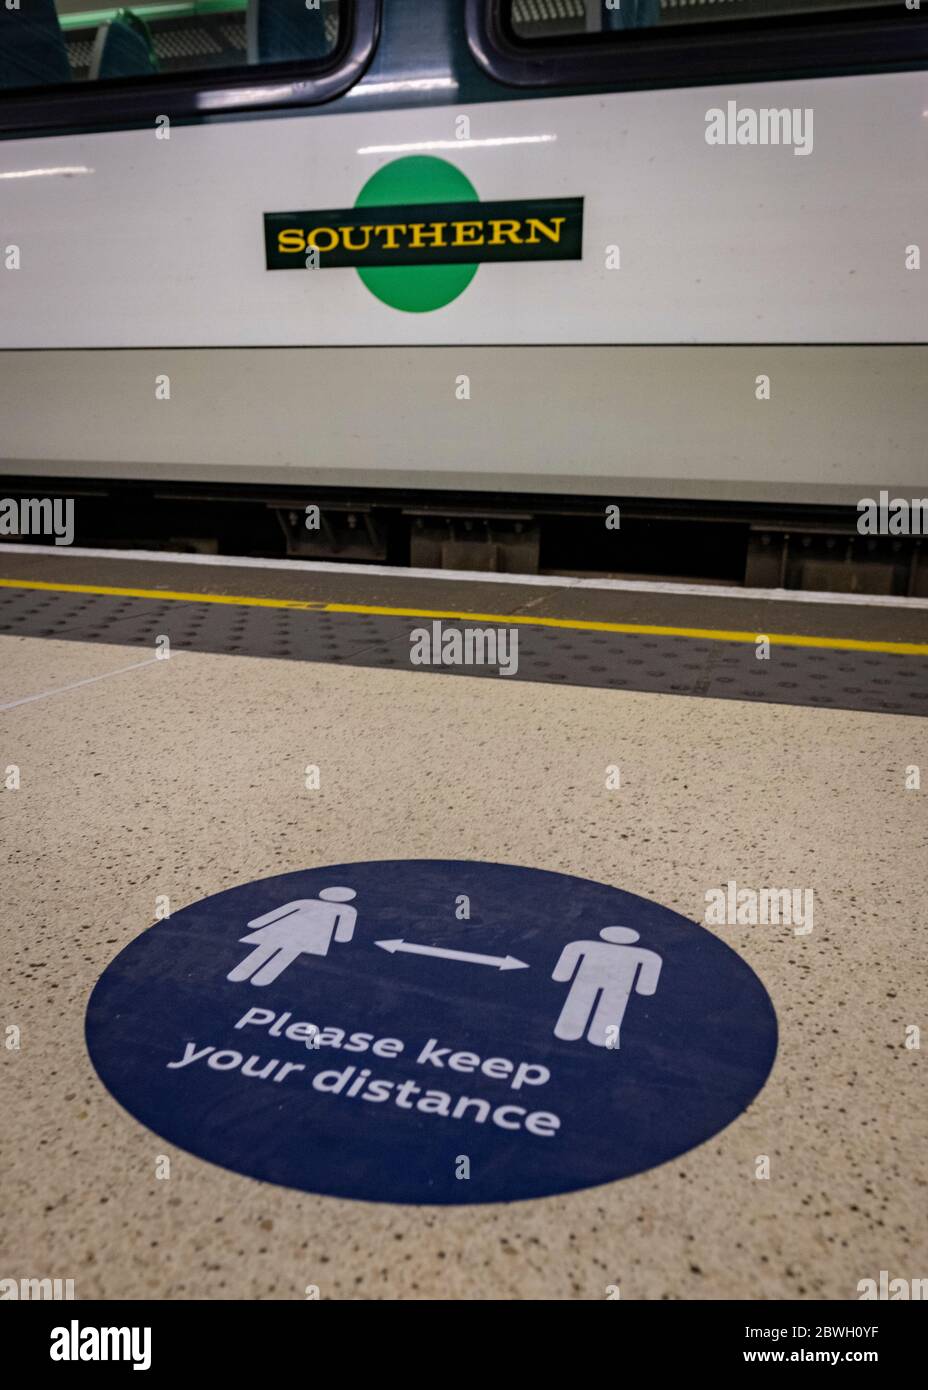 Victoria Station- Londres, Junio 2020: Guarda tu distancia etiqueta de información pública re Covid 19 distanciamiento social Foto de stock